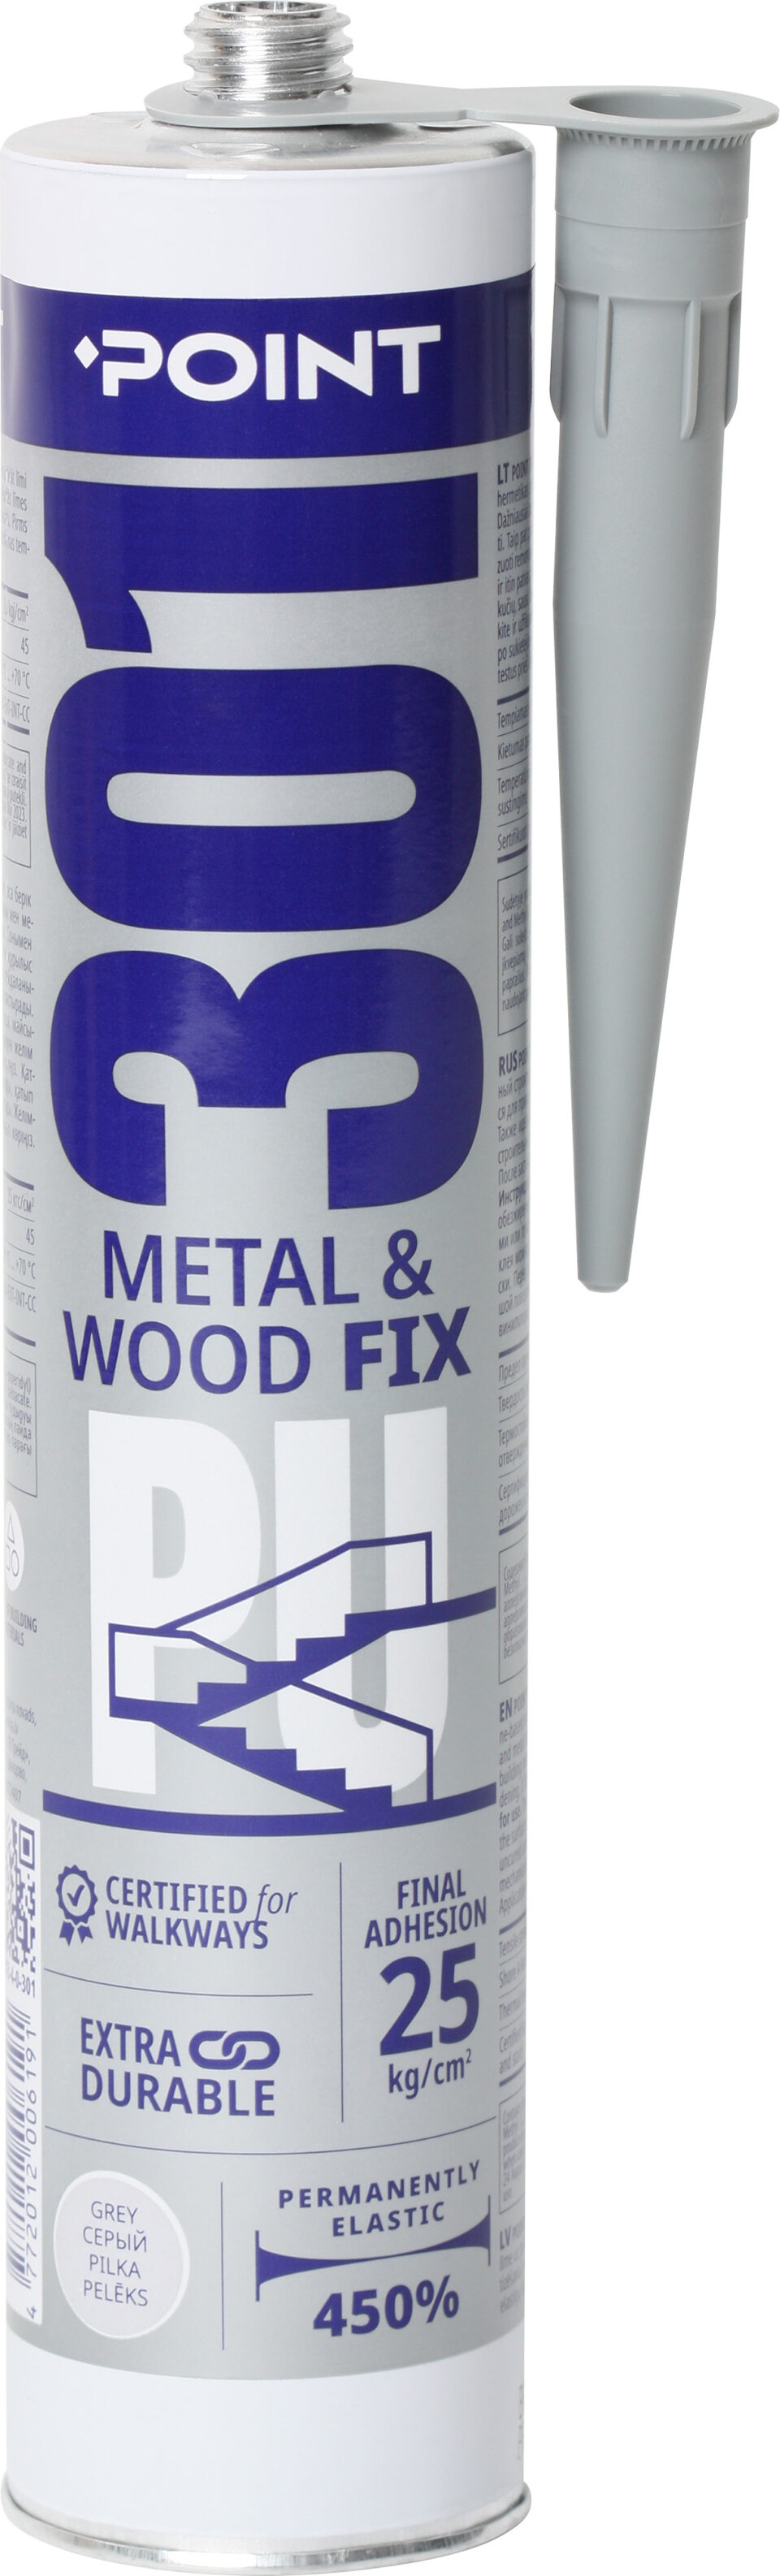 PU 301 Metal & Wood Fix poliuretāna montāžas līme